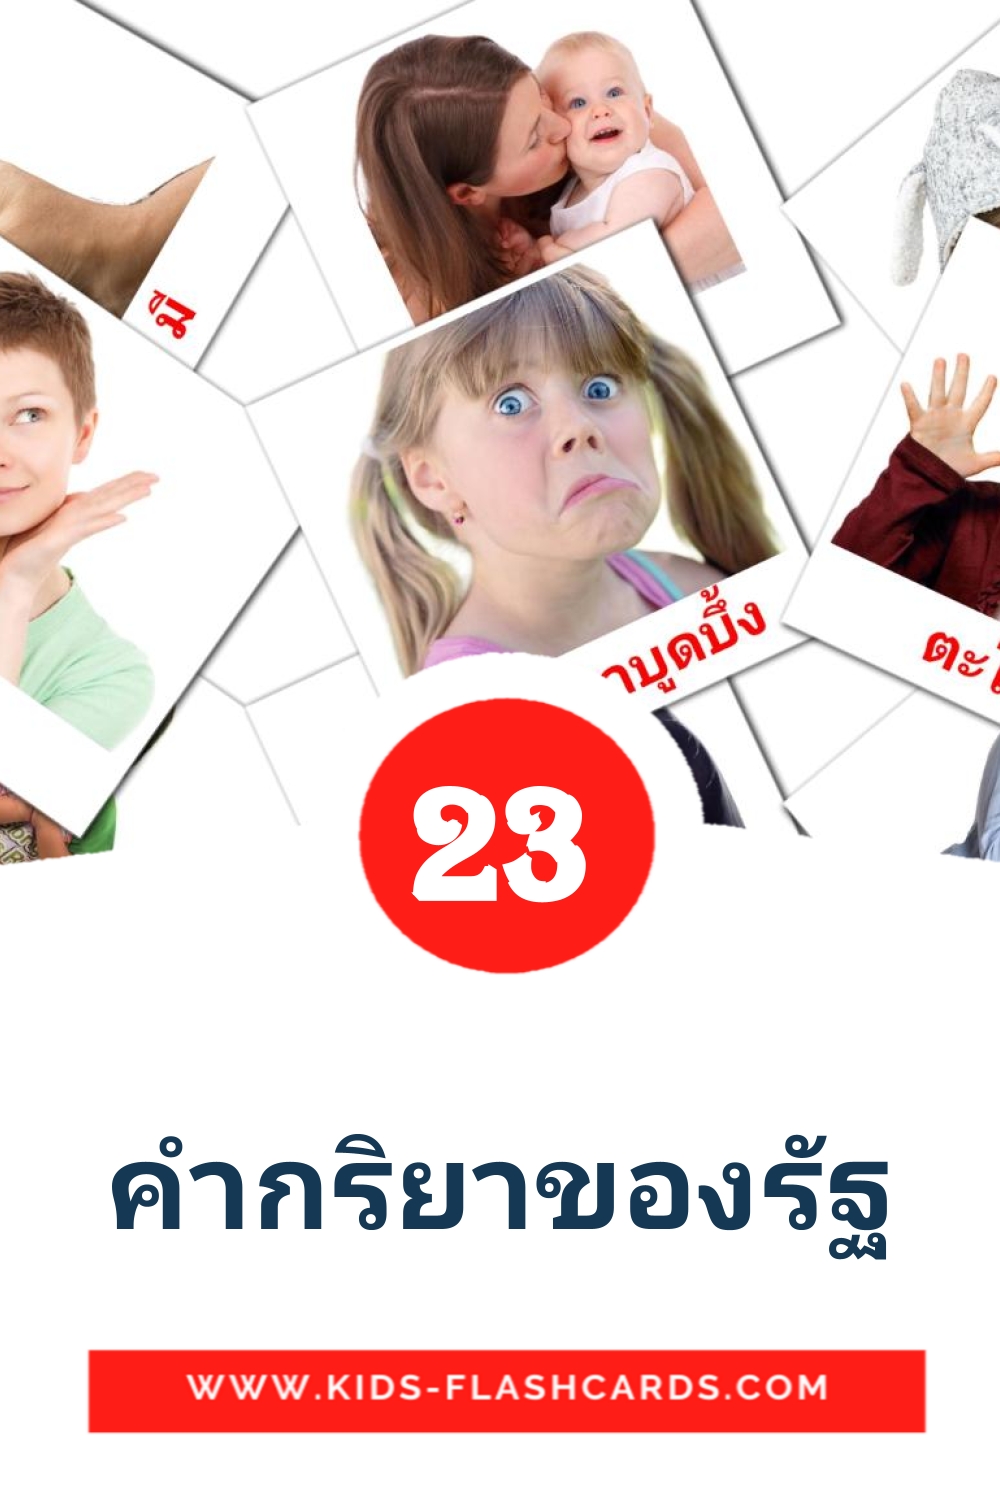 23 Cartões com Imagens de คํากริยาของรัฐ para Jardim de Infância em thai